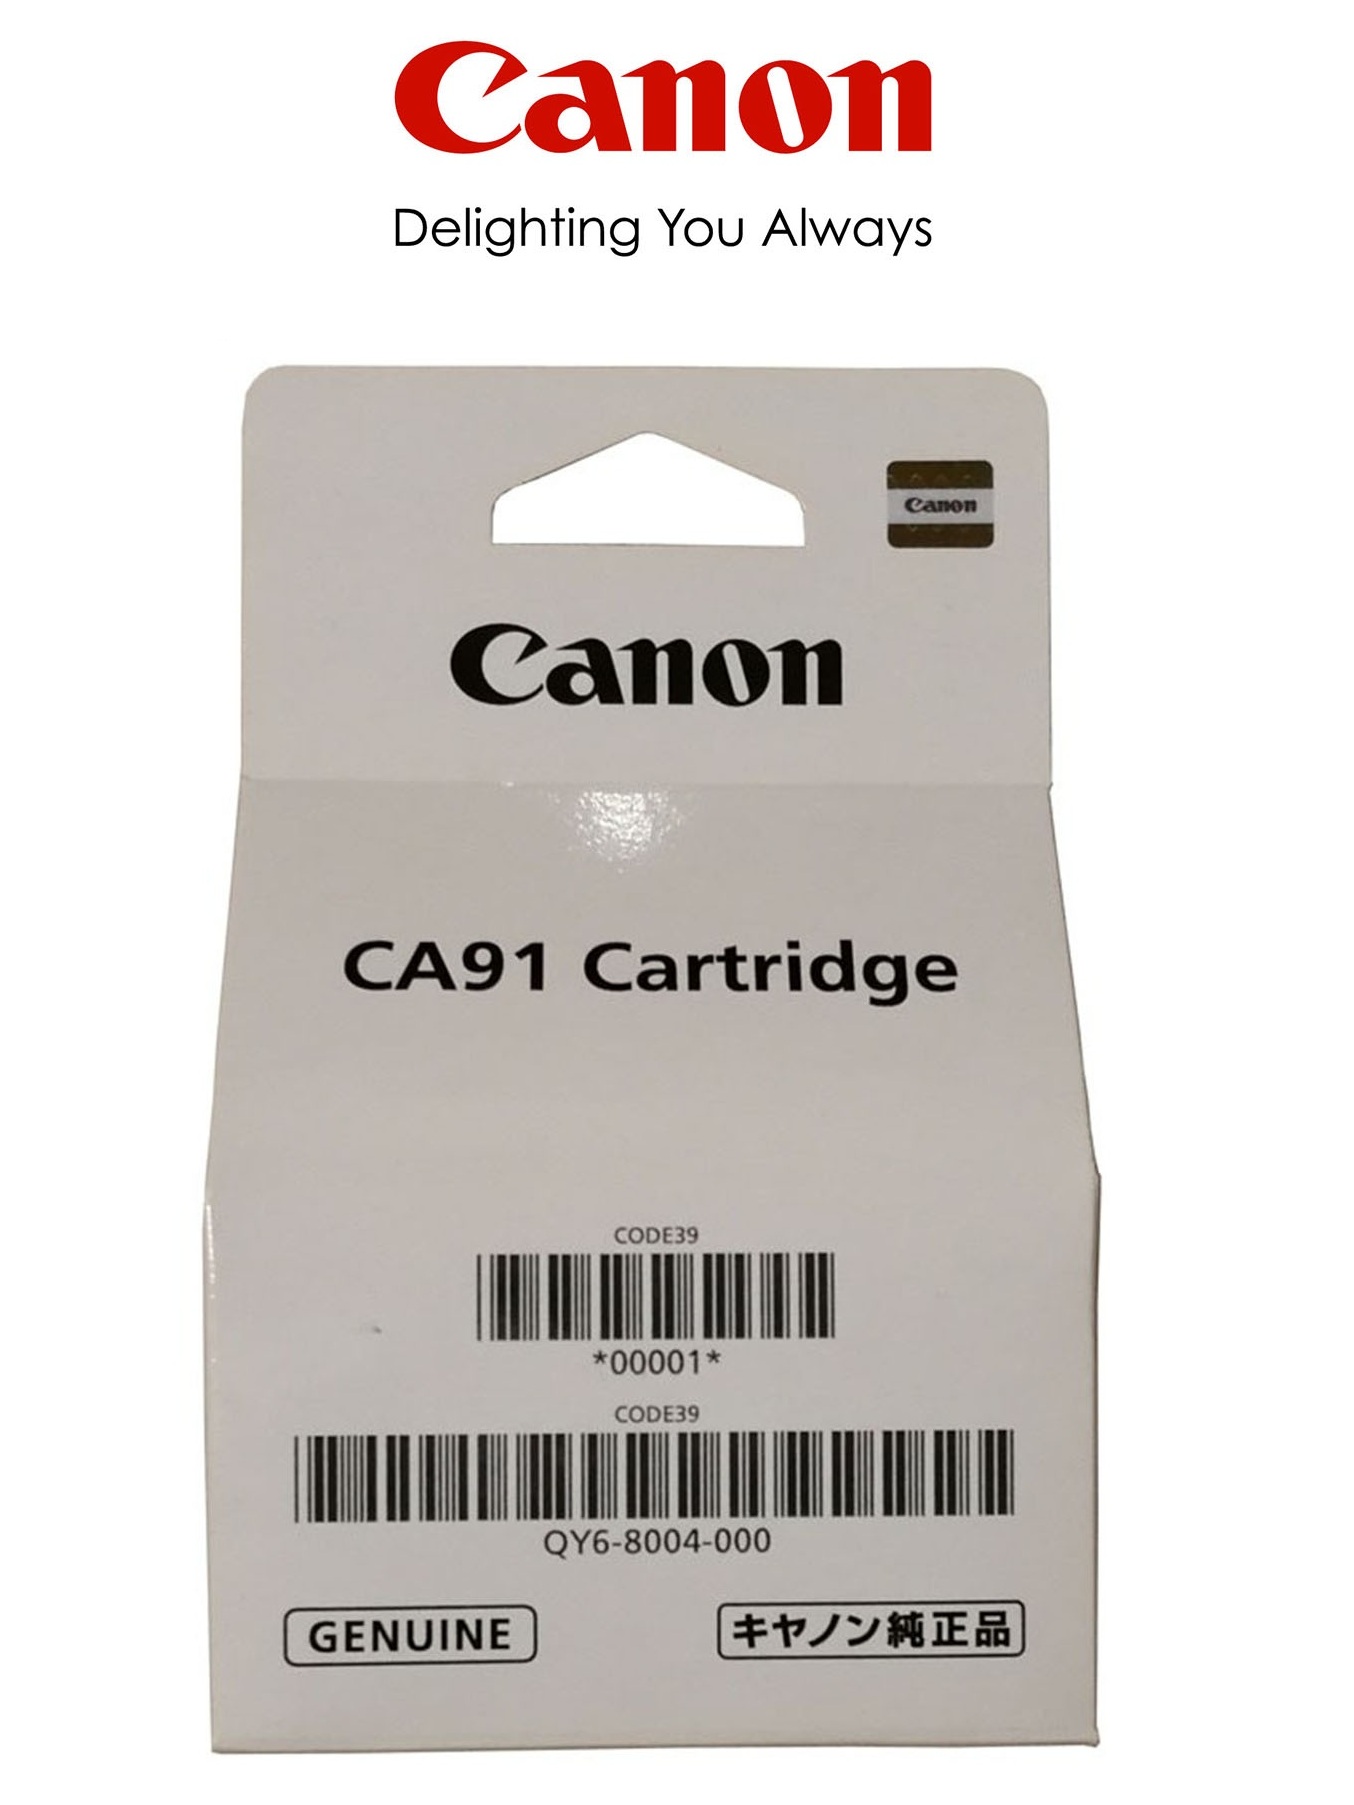 Печатающая головка Canon CA91